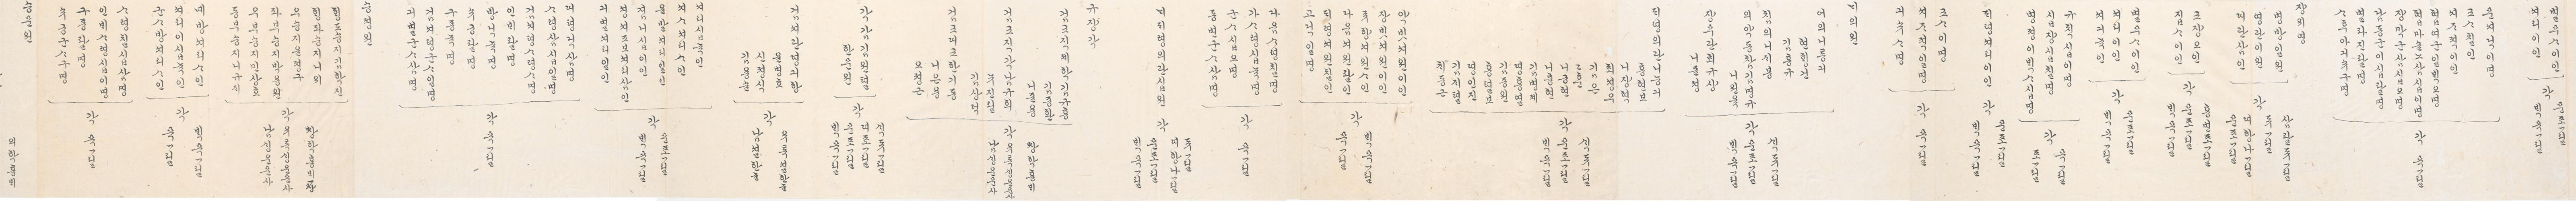 2_1894년 2월 왕세자 탄일 기념 상격 발기 5.jpg